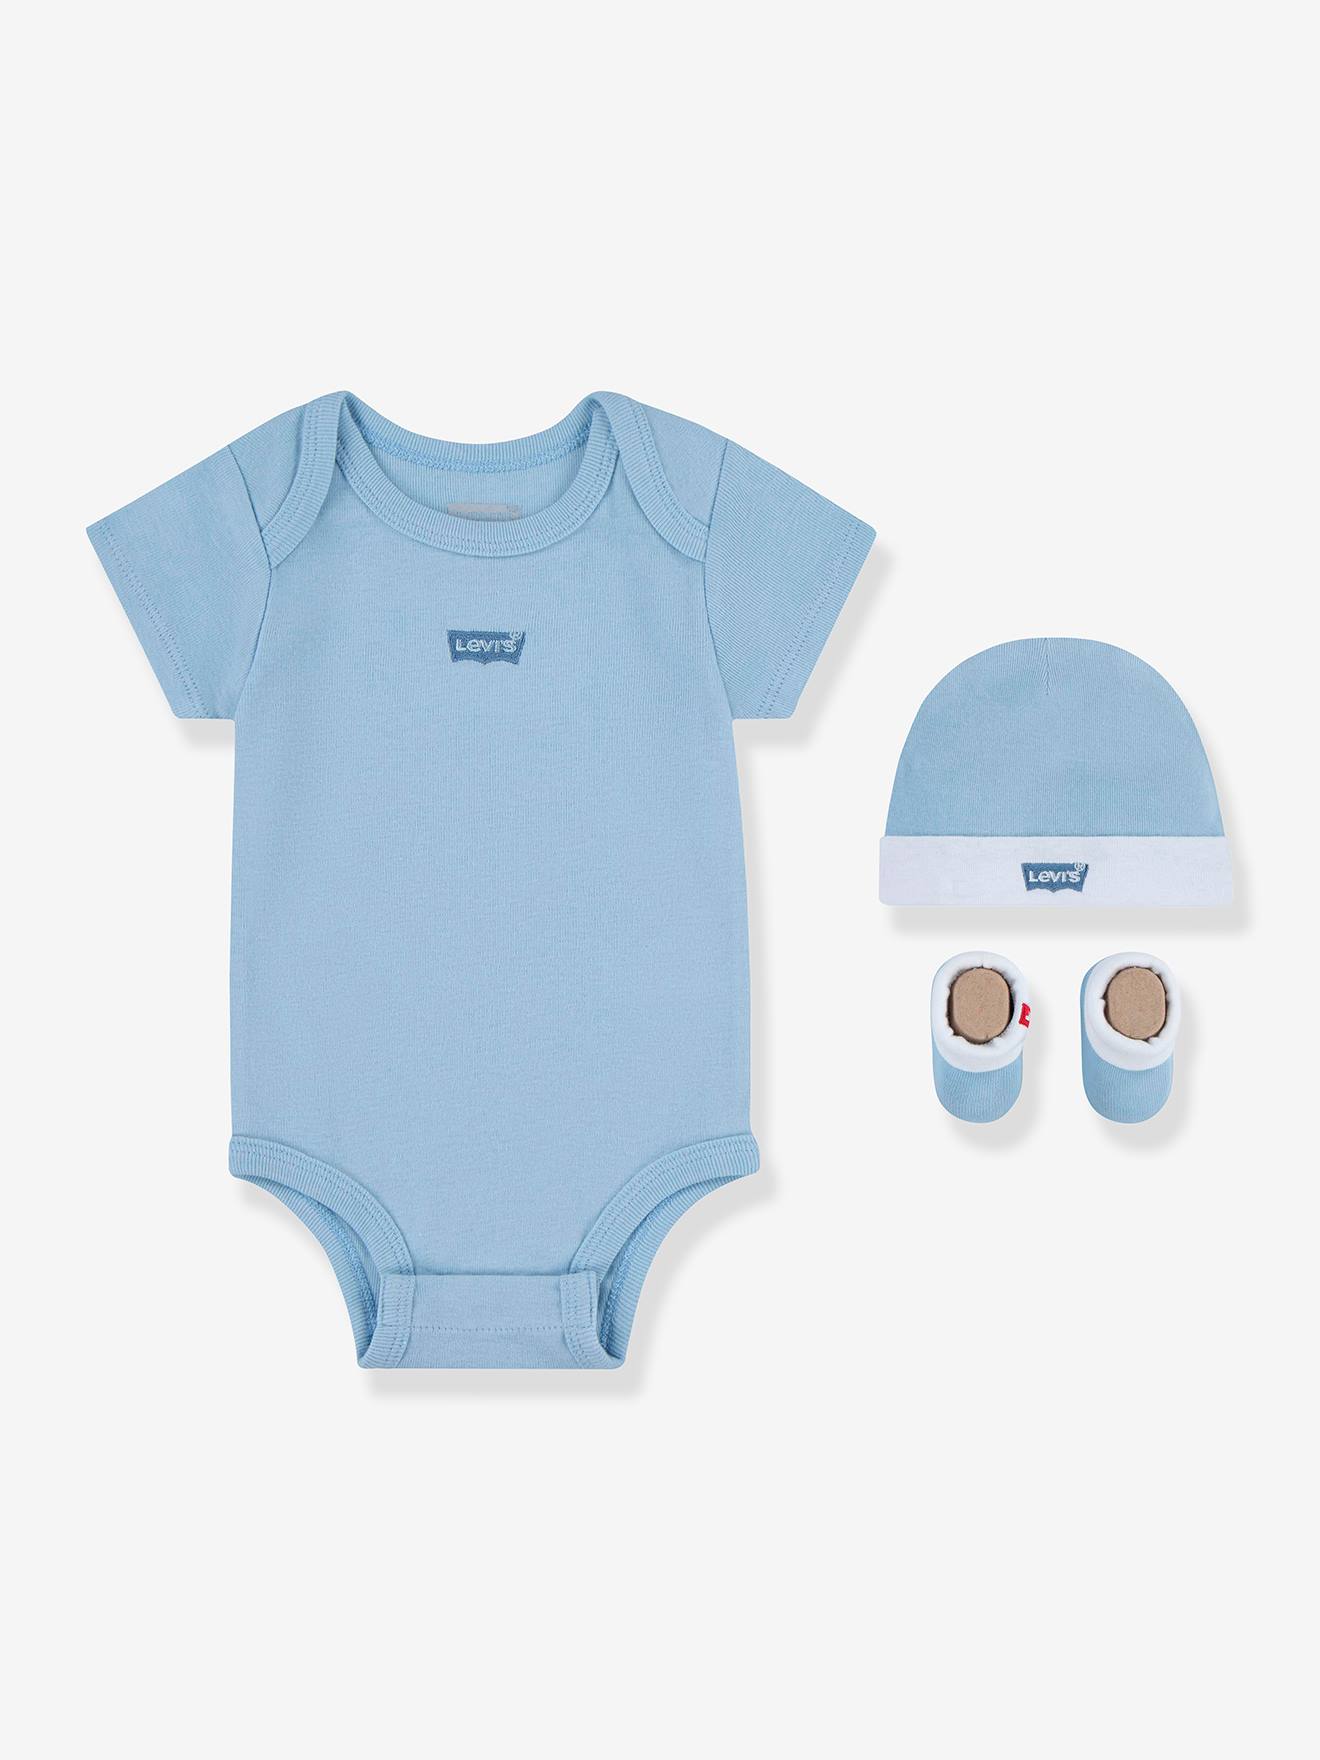 LEVIS KID'S Conjunto de 3 prendas Batwing de Levi's® para bebé azul claro